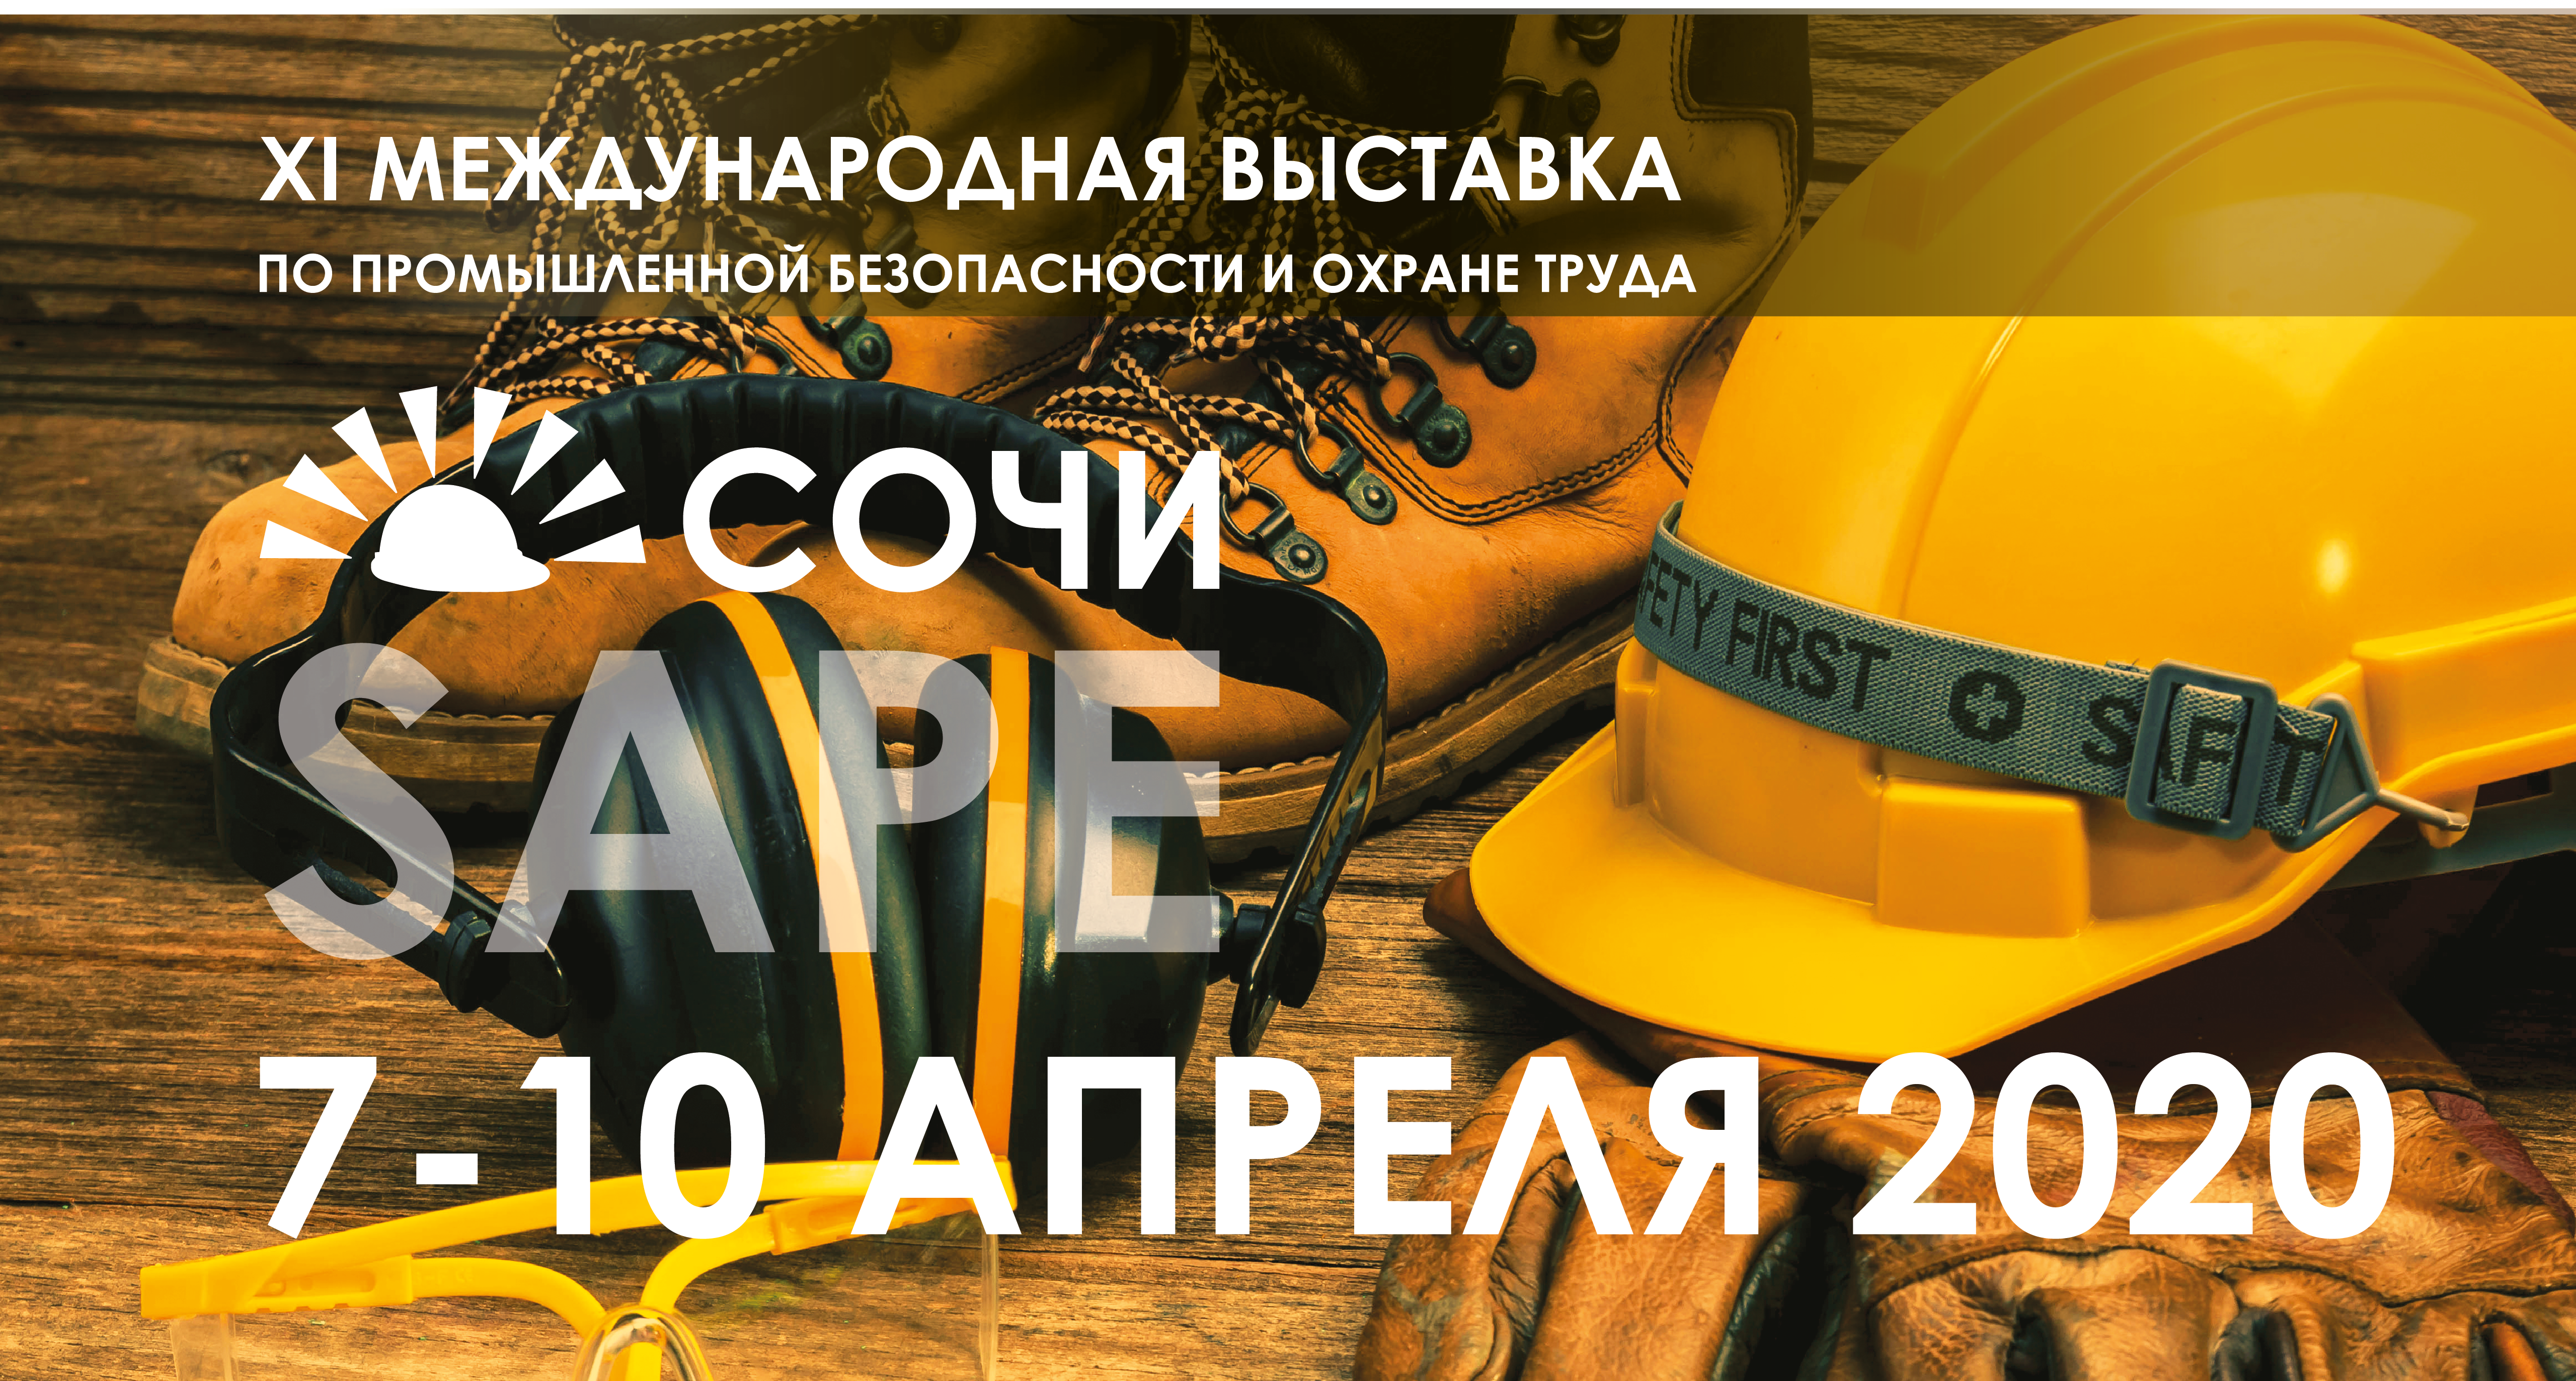 SAPE 2020 пройдет с 7 по 10 апреля 2020 года